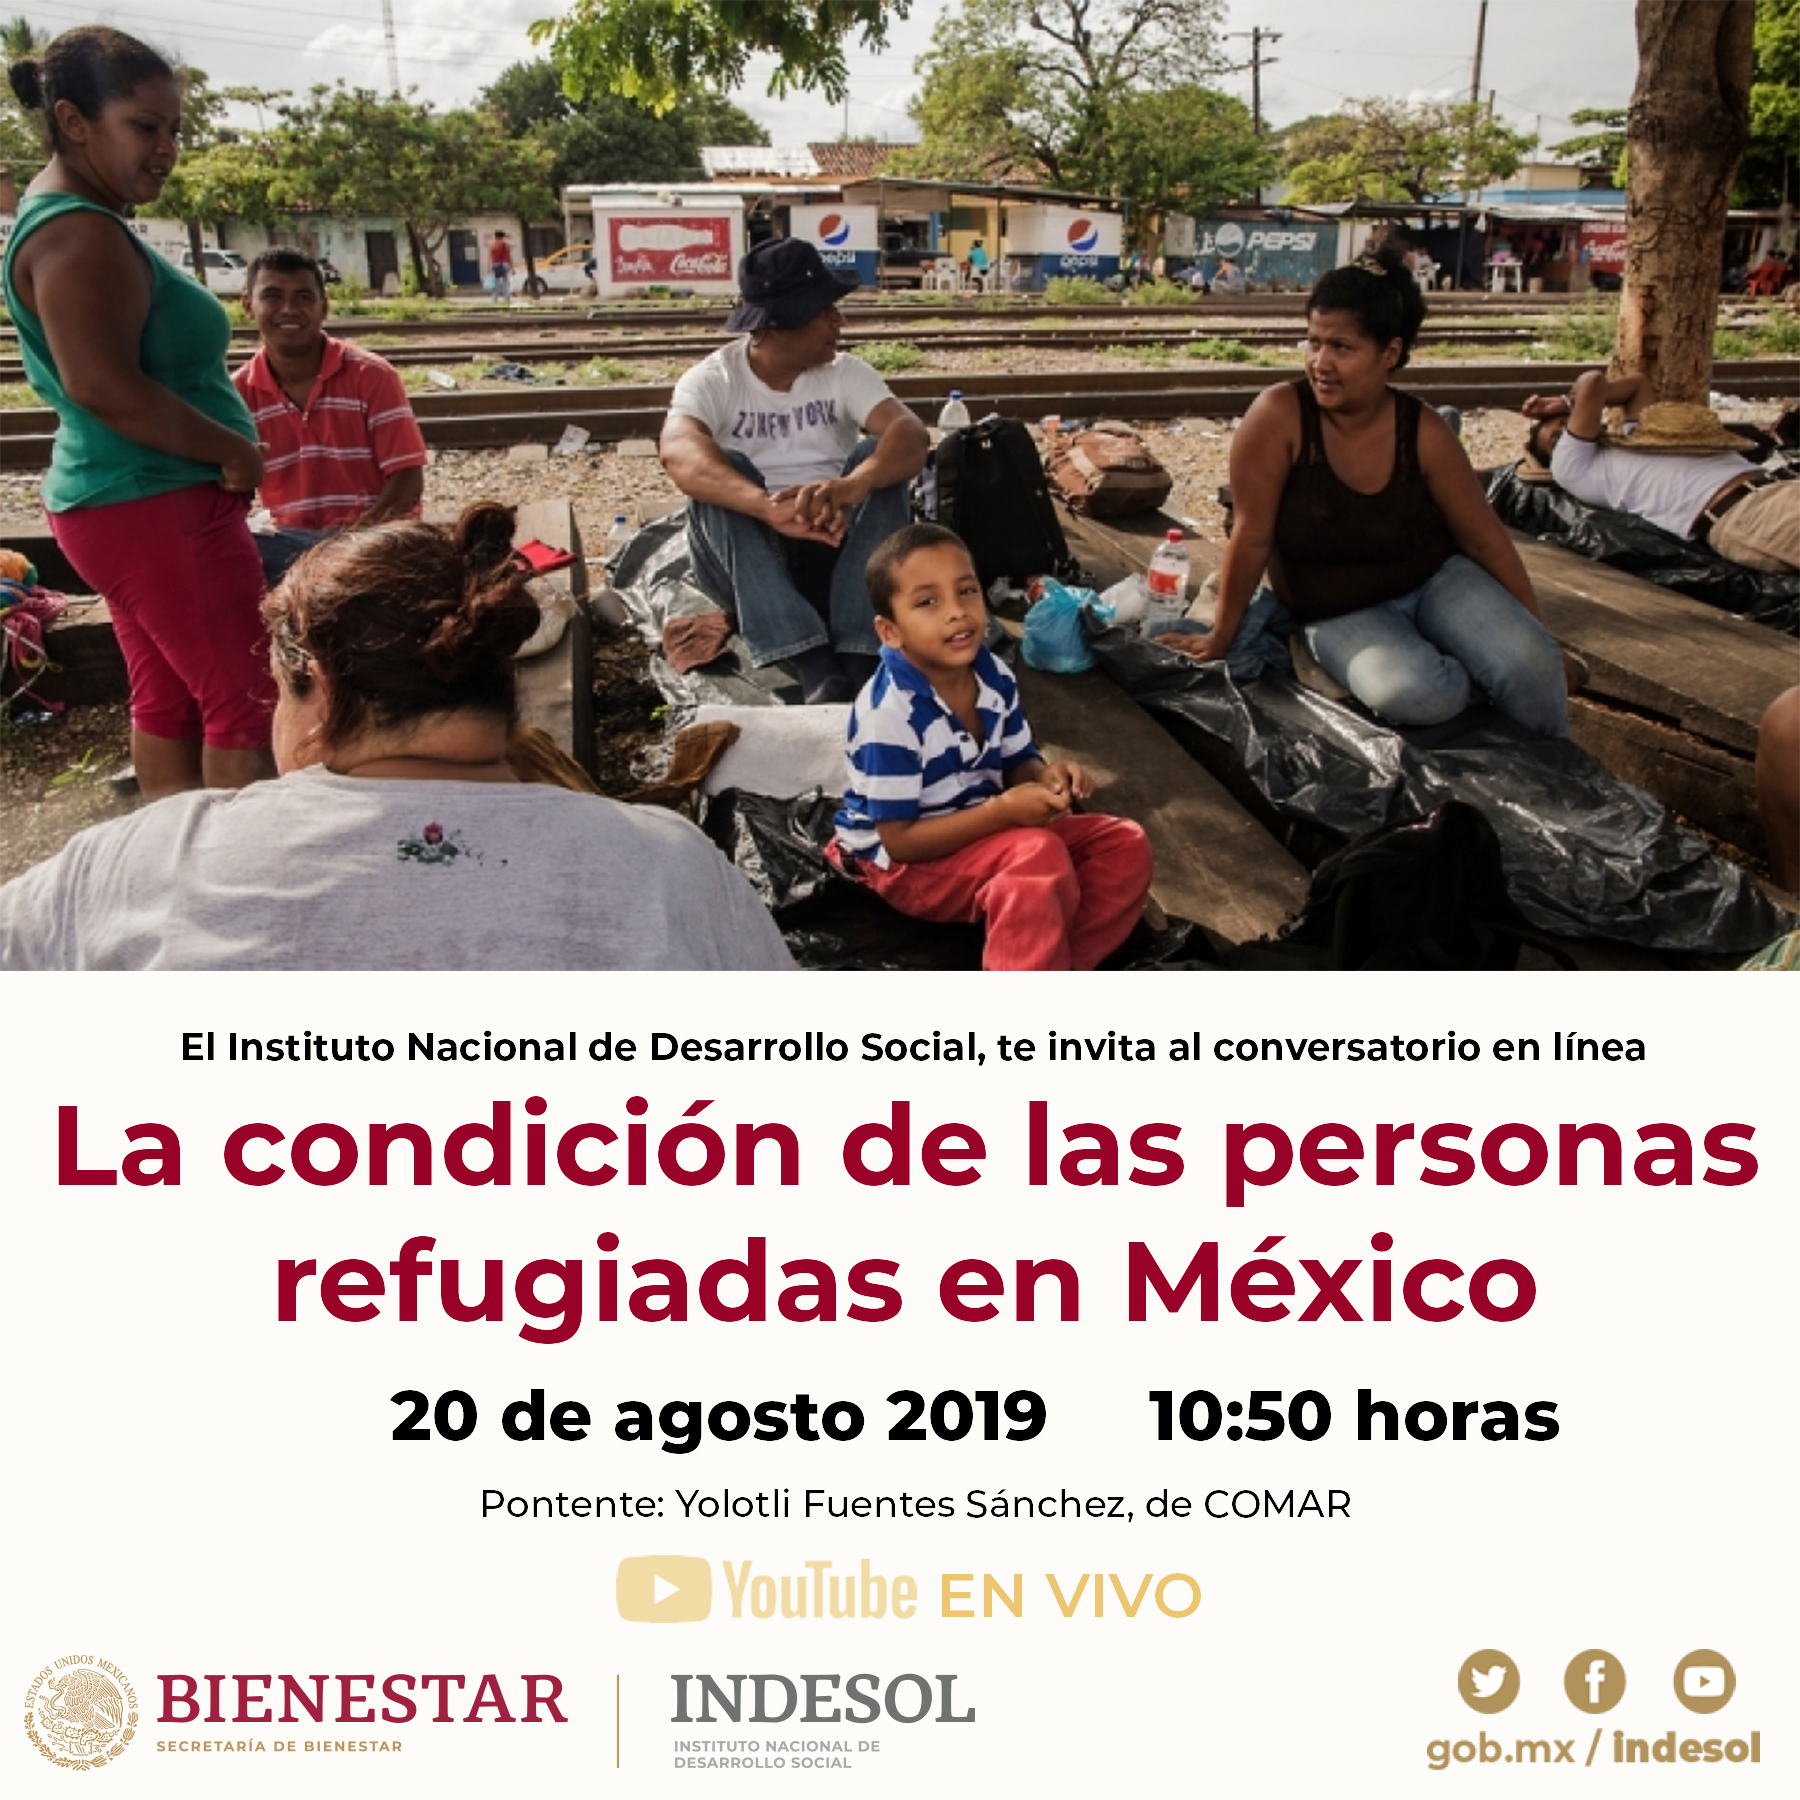 La condición de las personas refugiadas en México